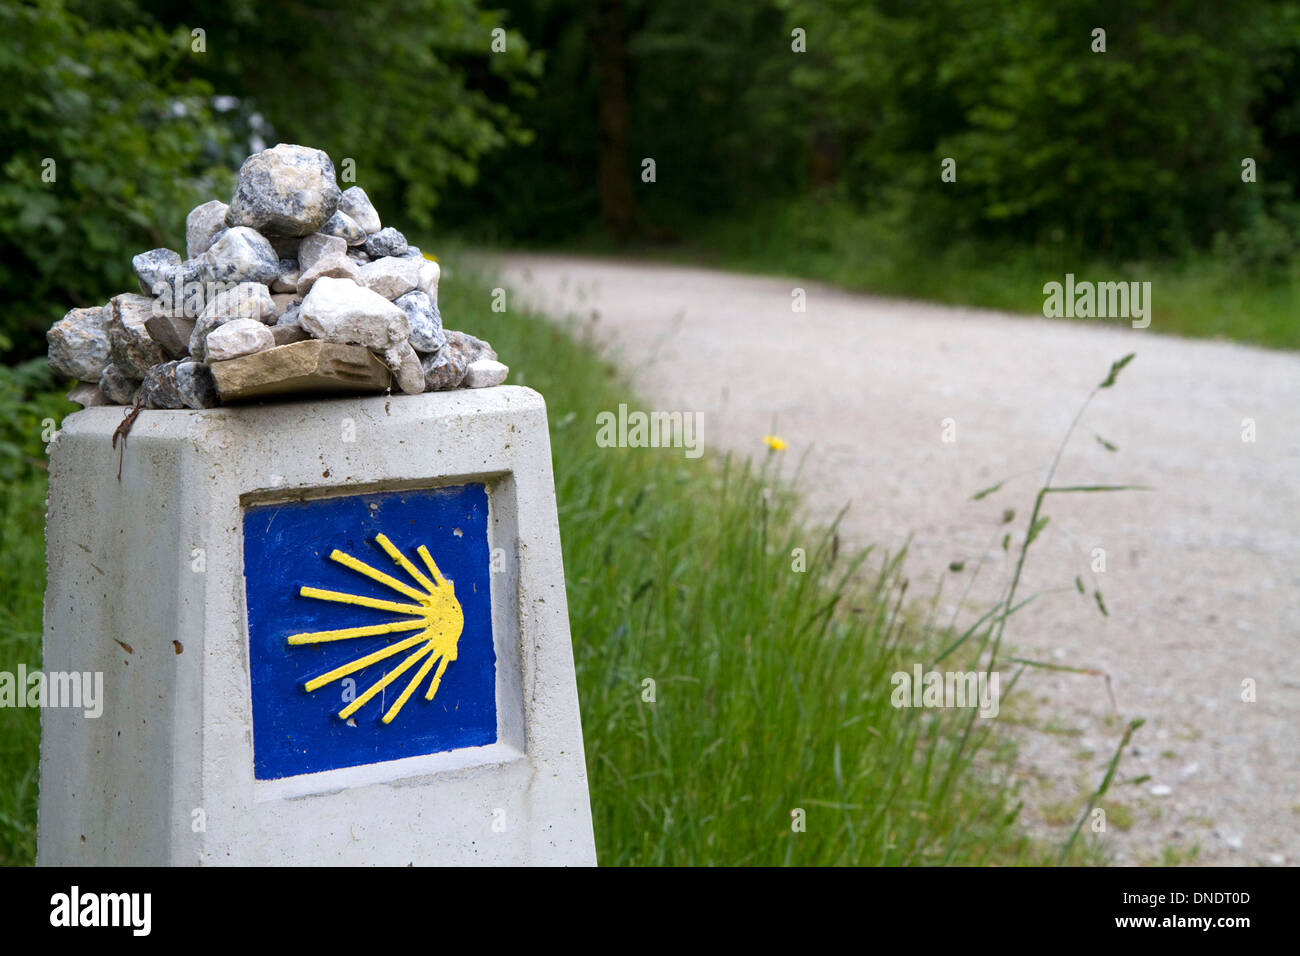 El marcador a lo largo del Camino de Santiago, el Camino de Santiago, Navarra, España. Foto de stock